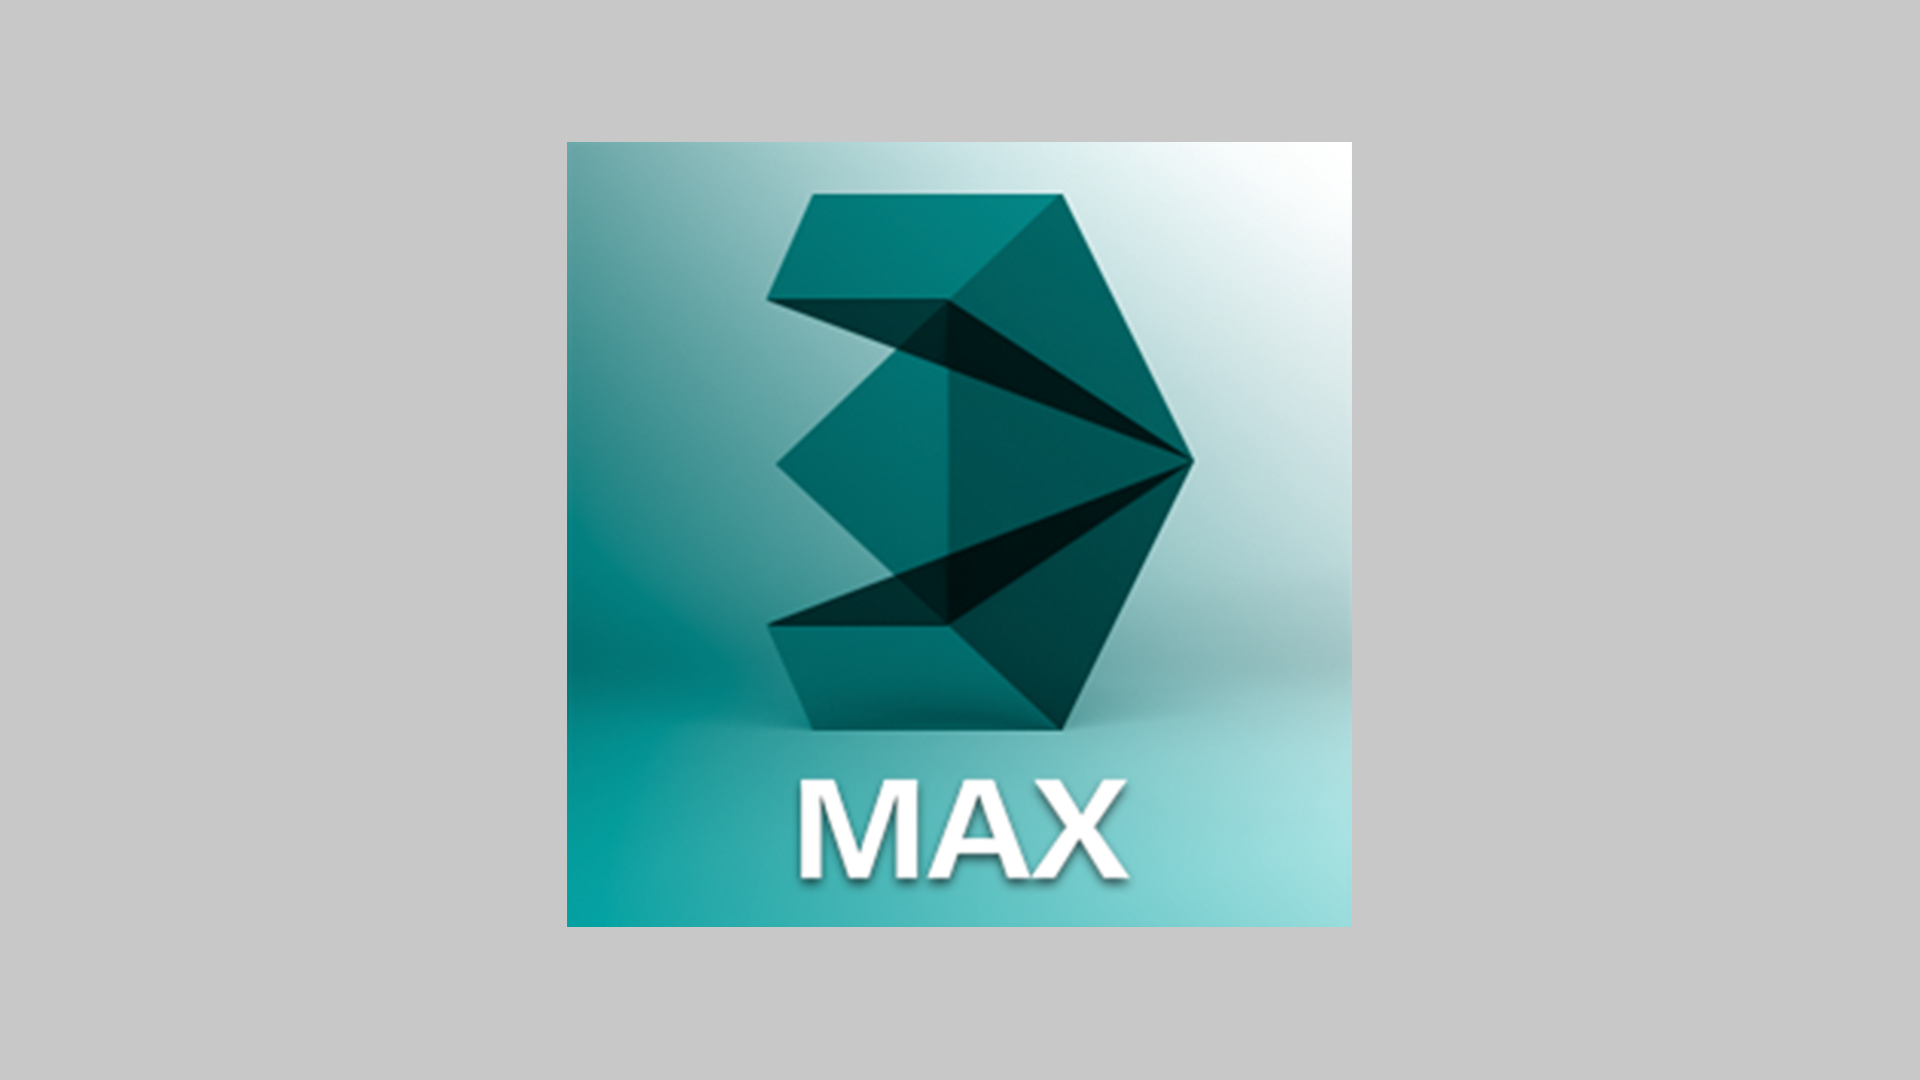 3ds max 2015 crack